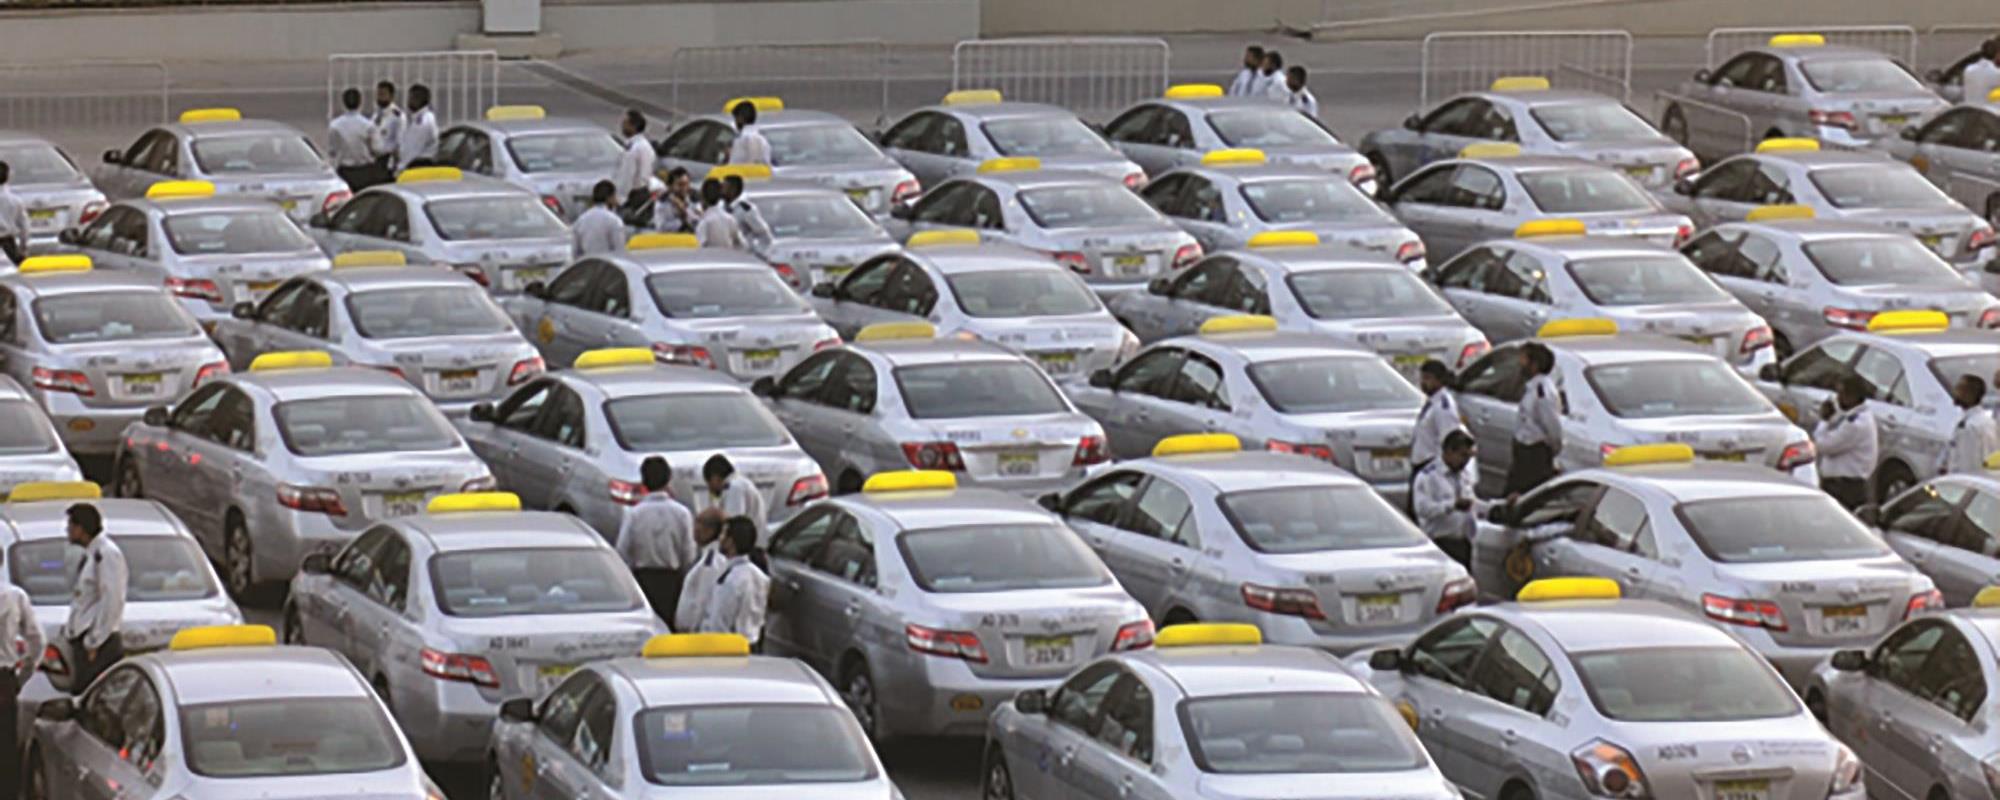 Dubai Taxi Fare Chart